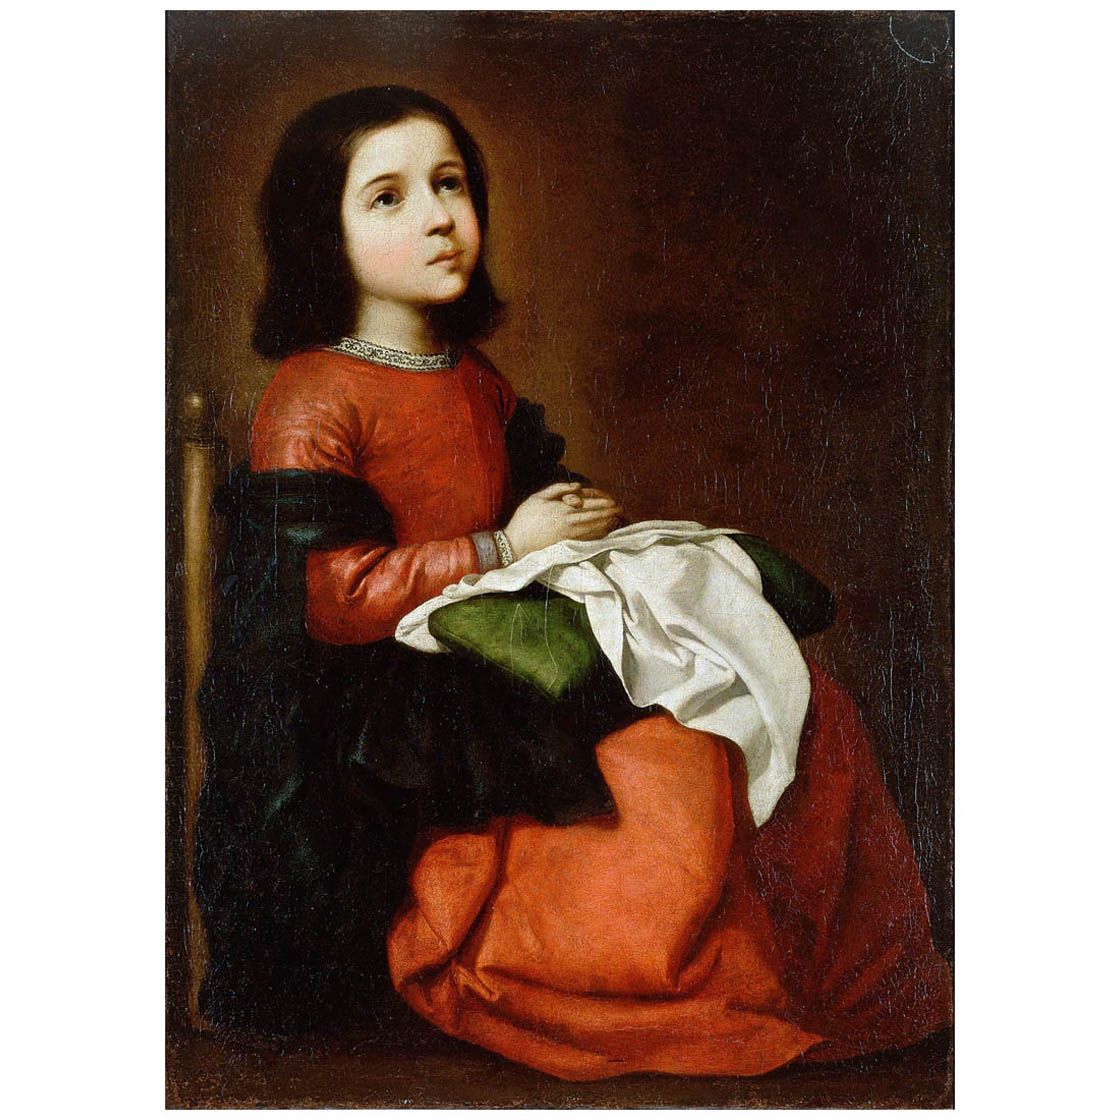 Francisco de Zurbaran. Maria niña. 1658-1660. Hermitage Museum